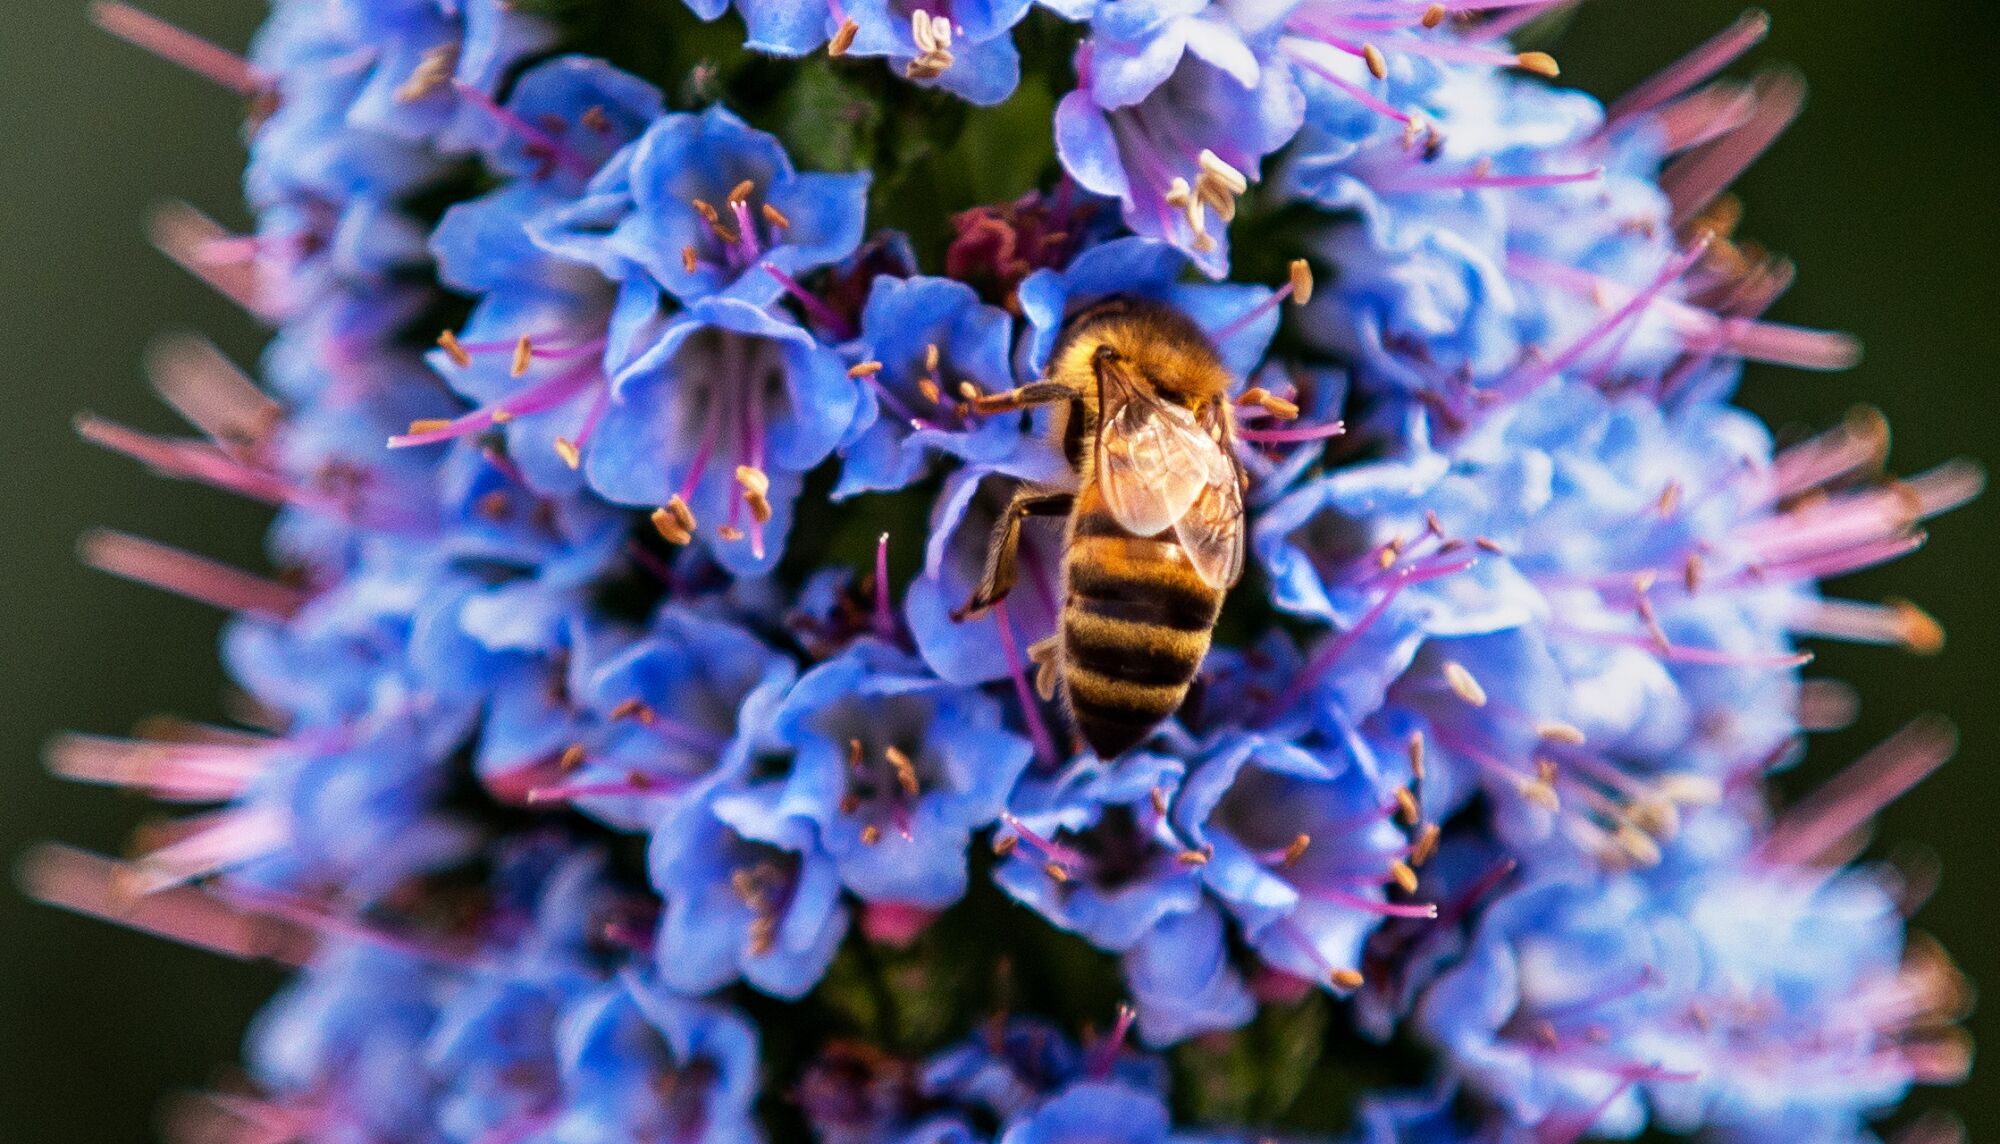 Yakın çekim olarak çerçevelenmiş, Madeira'nın Gururu bitkisine konan bir arı 